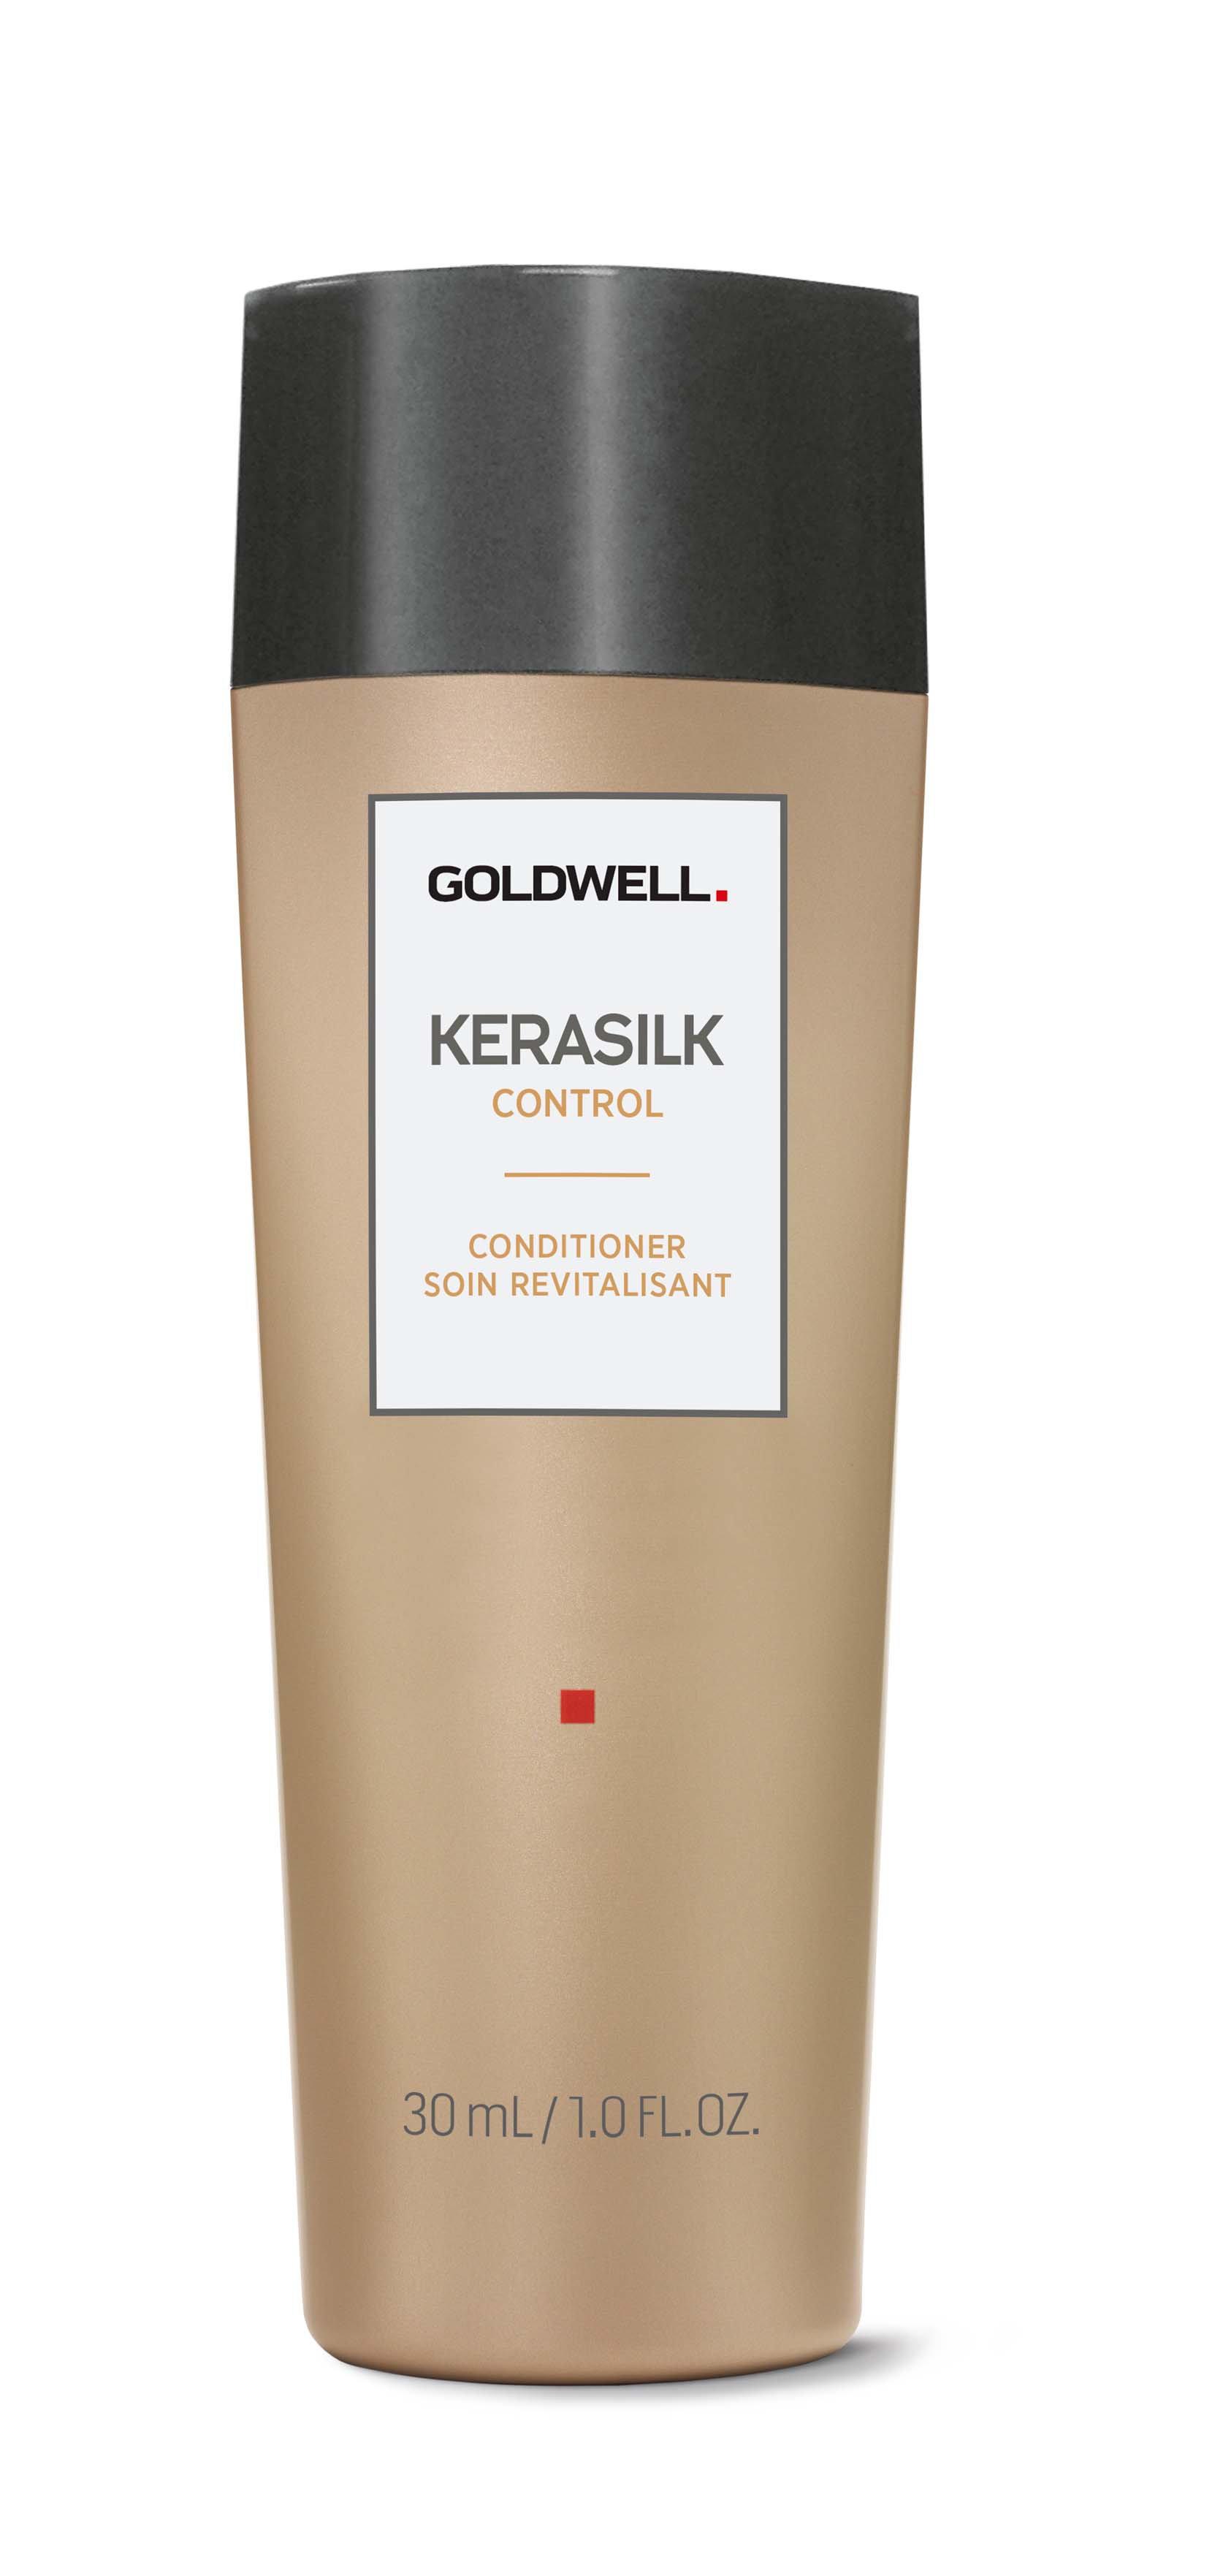 Goldwell Kerasilk Control Conditioner in Reisegröße 30 ml